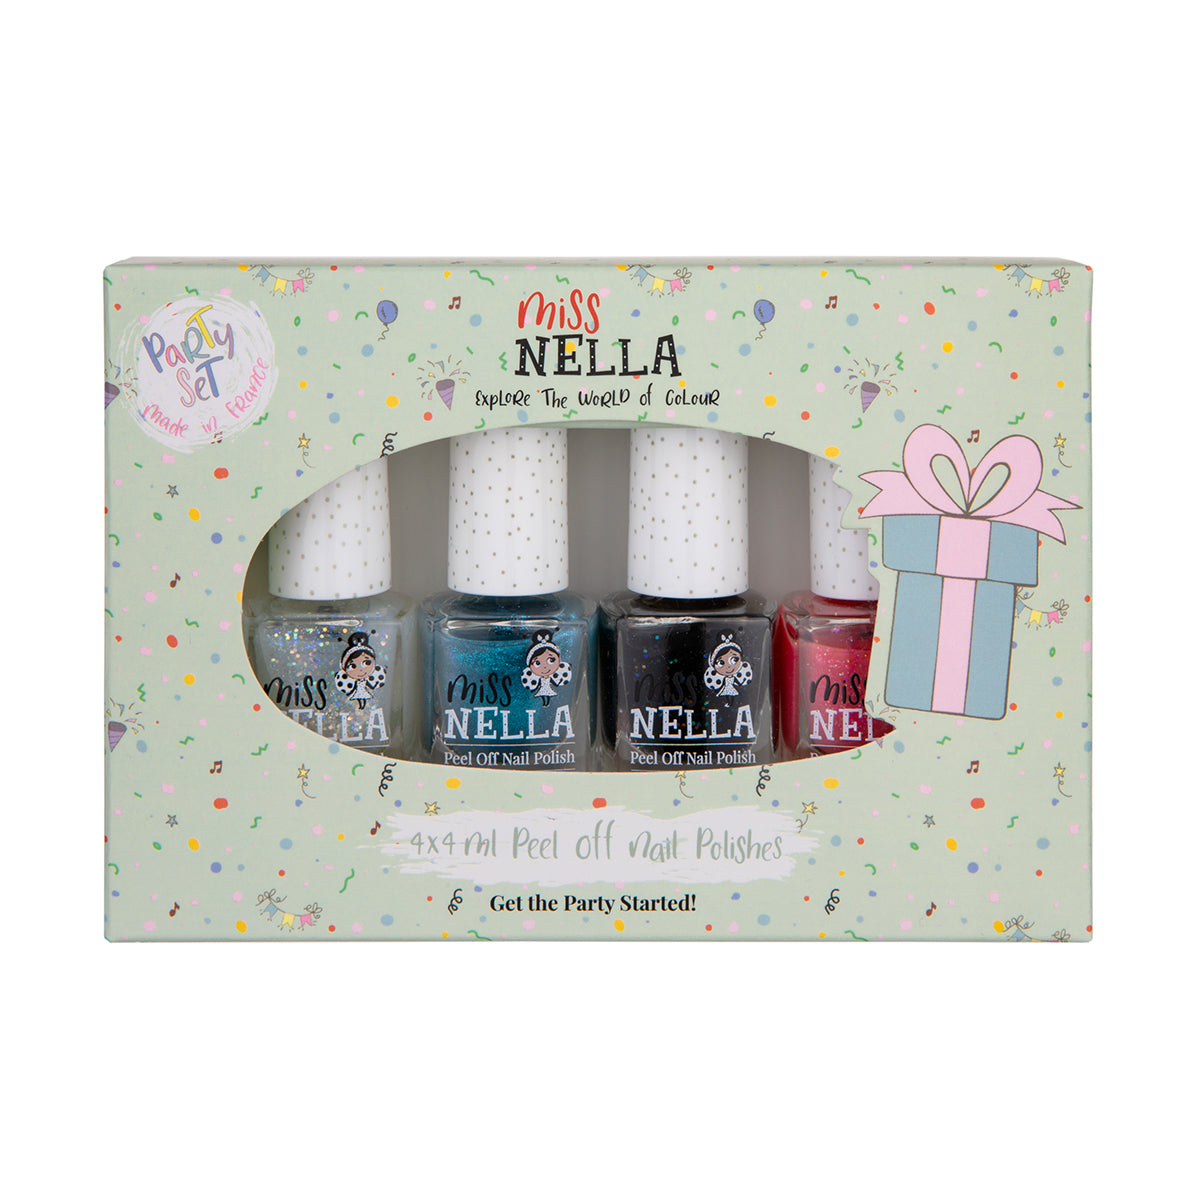 Laat de nageltjes van jouw kindje shinen met de nagellak dino 4-pack van het merk Miss Nella. De peel off nagellak is speciaal ontworpen voor kinderen en is vrij van chemicaliën. Kleuren: blauw, wit, roze en zwart. VanZus